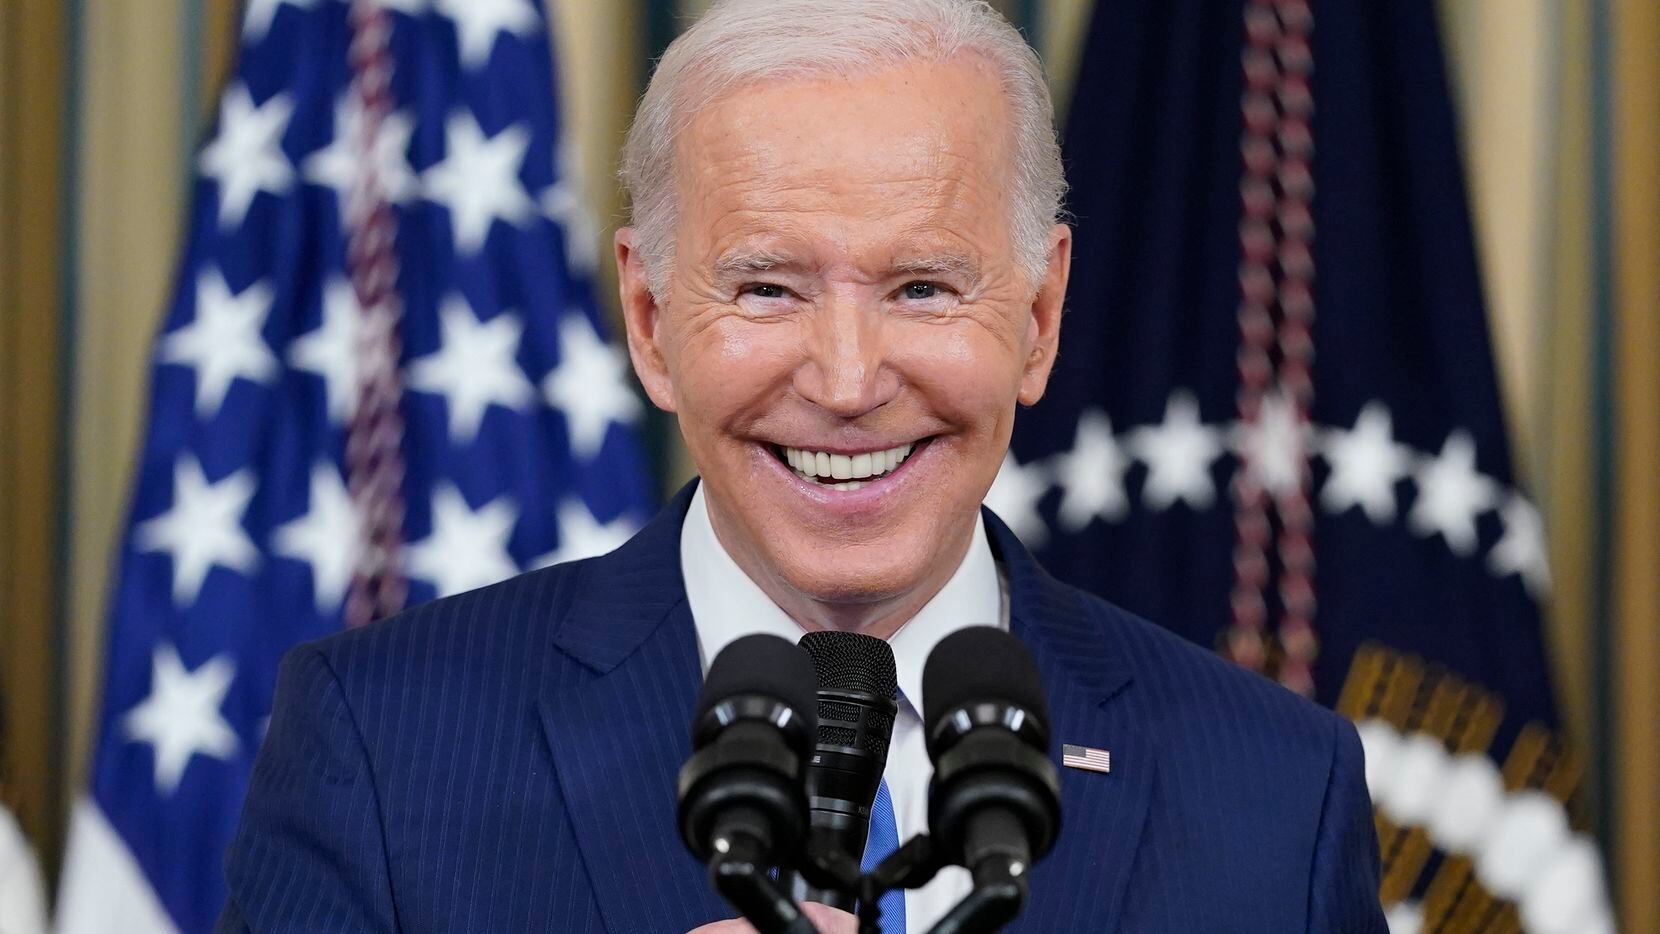 El presidente estadounidense Joe Biden sonríe durante un discurso en la Casa Blanca en...